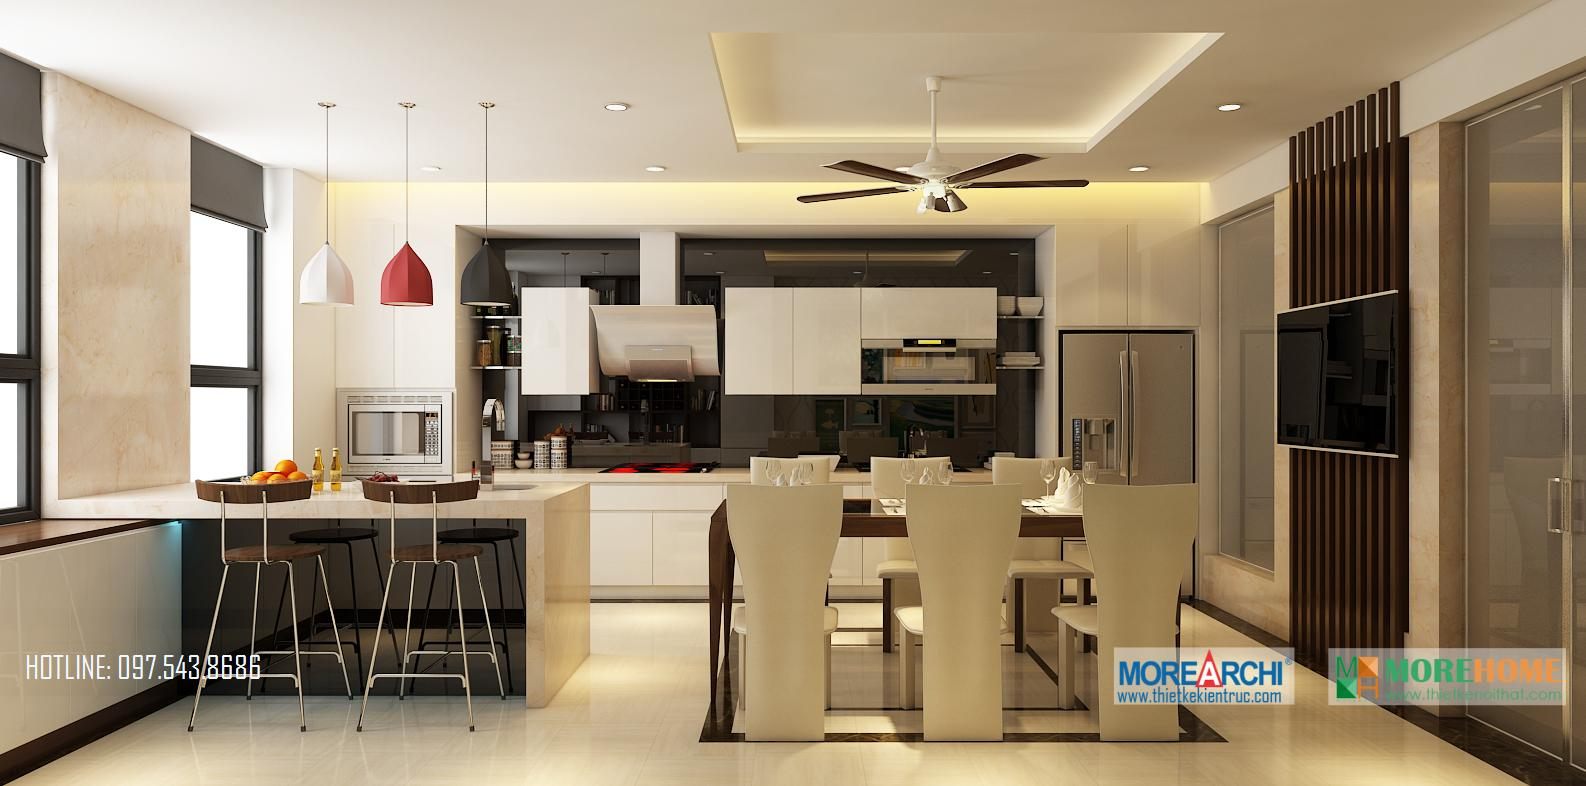 Thiết kế nội thất phòng bếp nhà phố hiện đại Trần Duy Hưng Trung Hòa Cầu Giấy Hà Nội